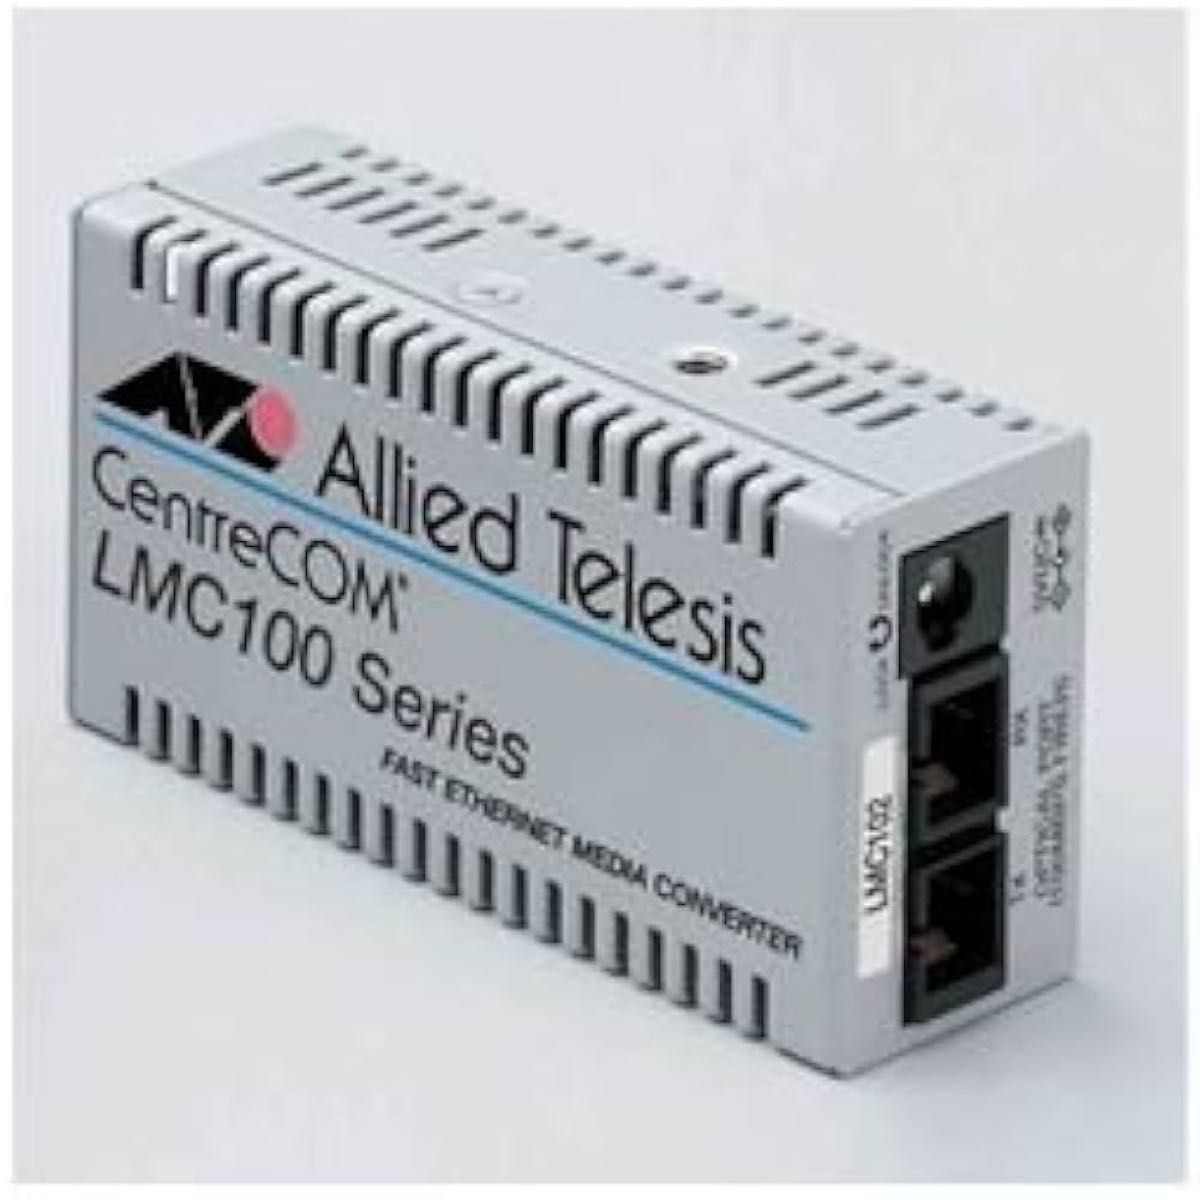 アライドテレシス メディアコンバーター LMC102 CentreCOM 100M 2心 MMF/SMF 0011R